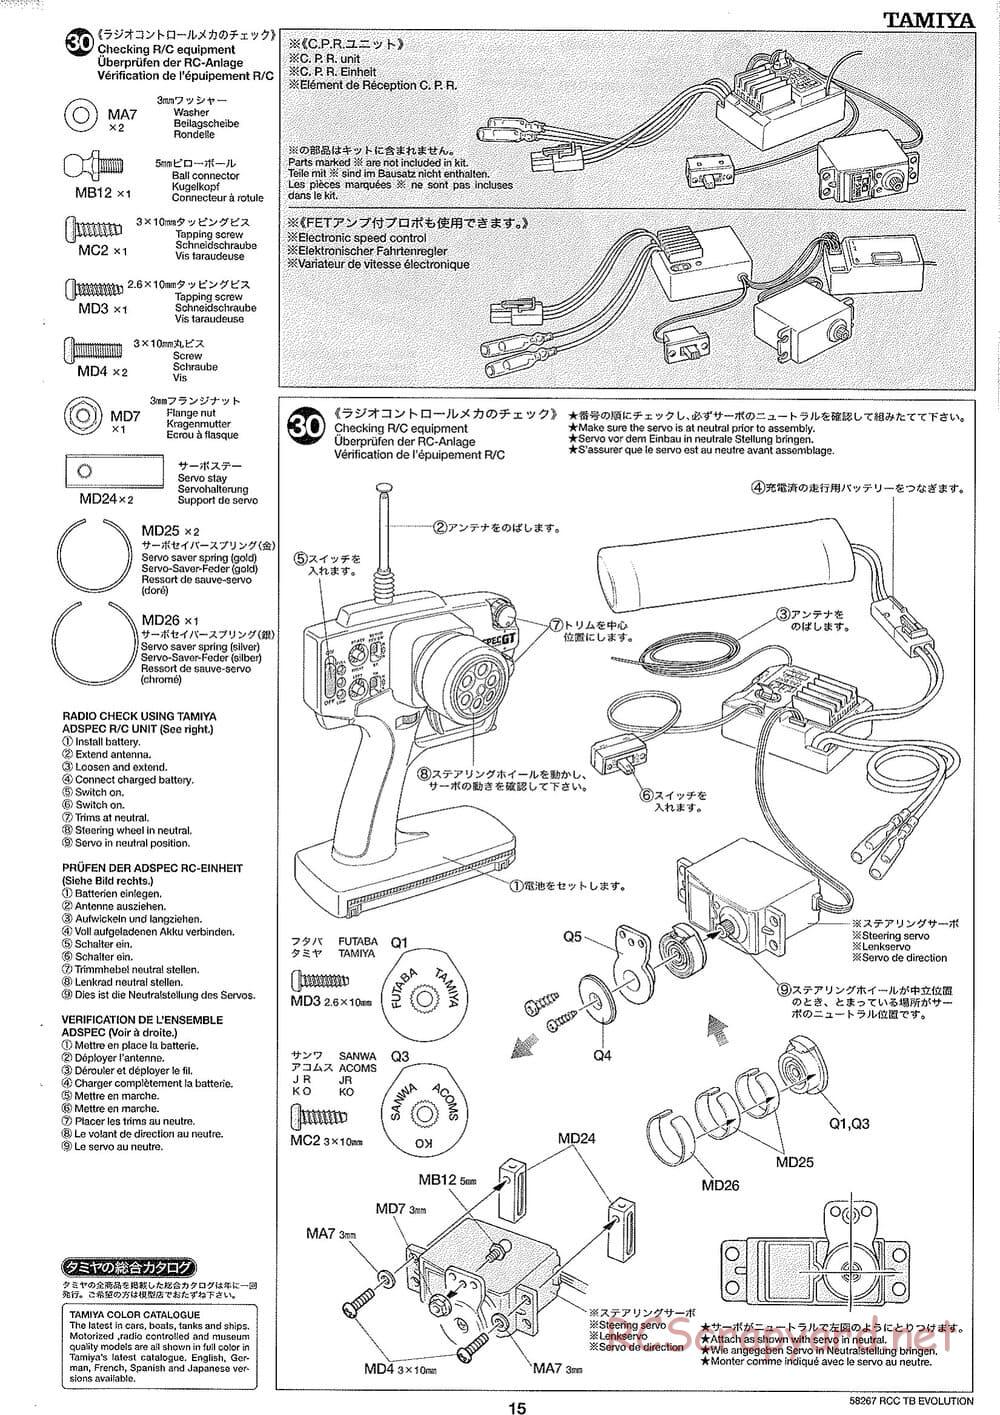 Tamiya - TB Evolution Chassis - Manual - Page 15